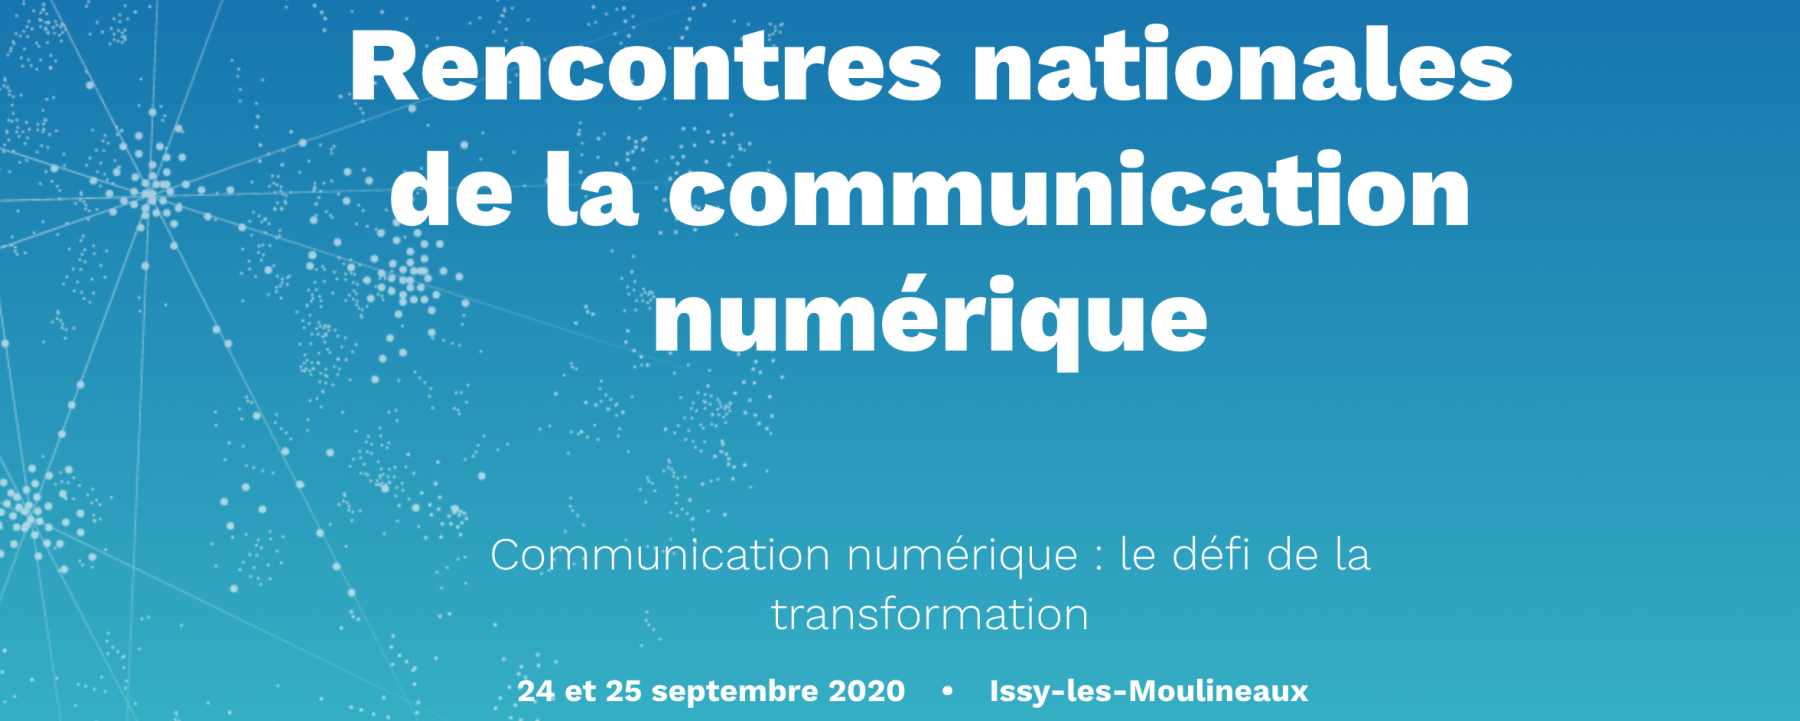 Evenement Rencontres nationales de la communication numérique, les 24 et 25 septembre 2020, organisé par Cap'Com